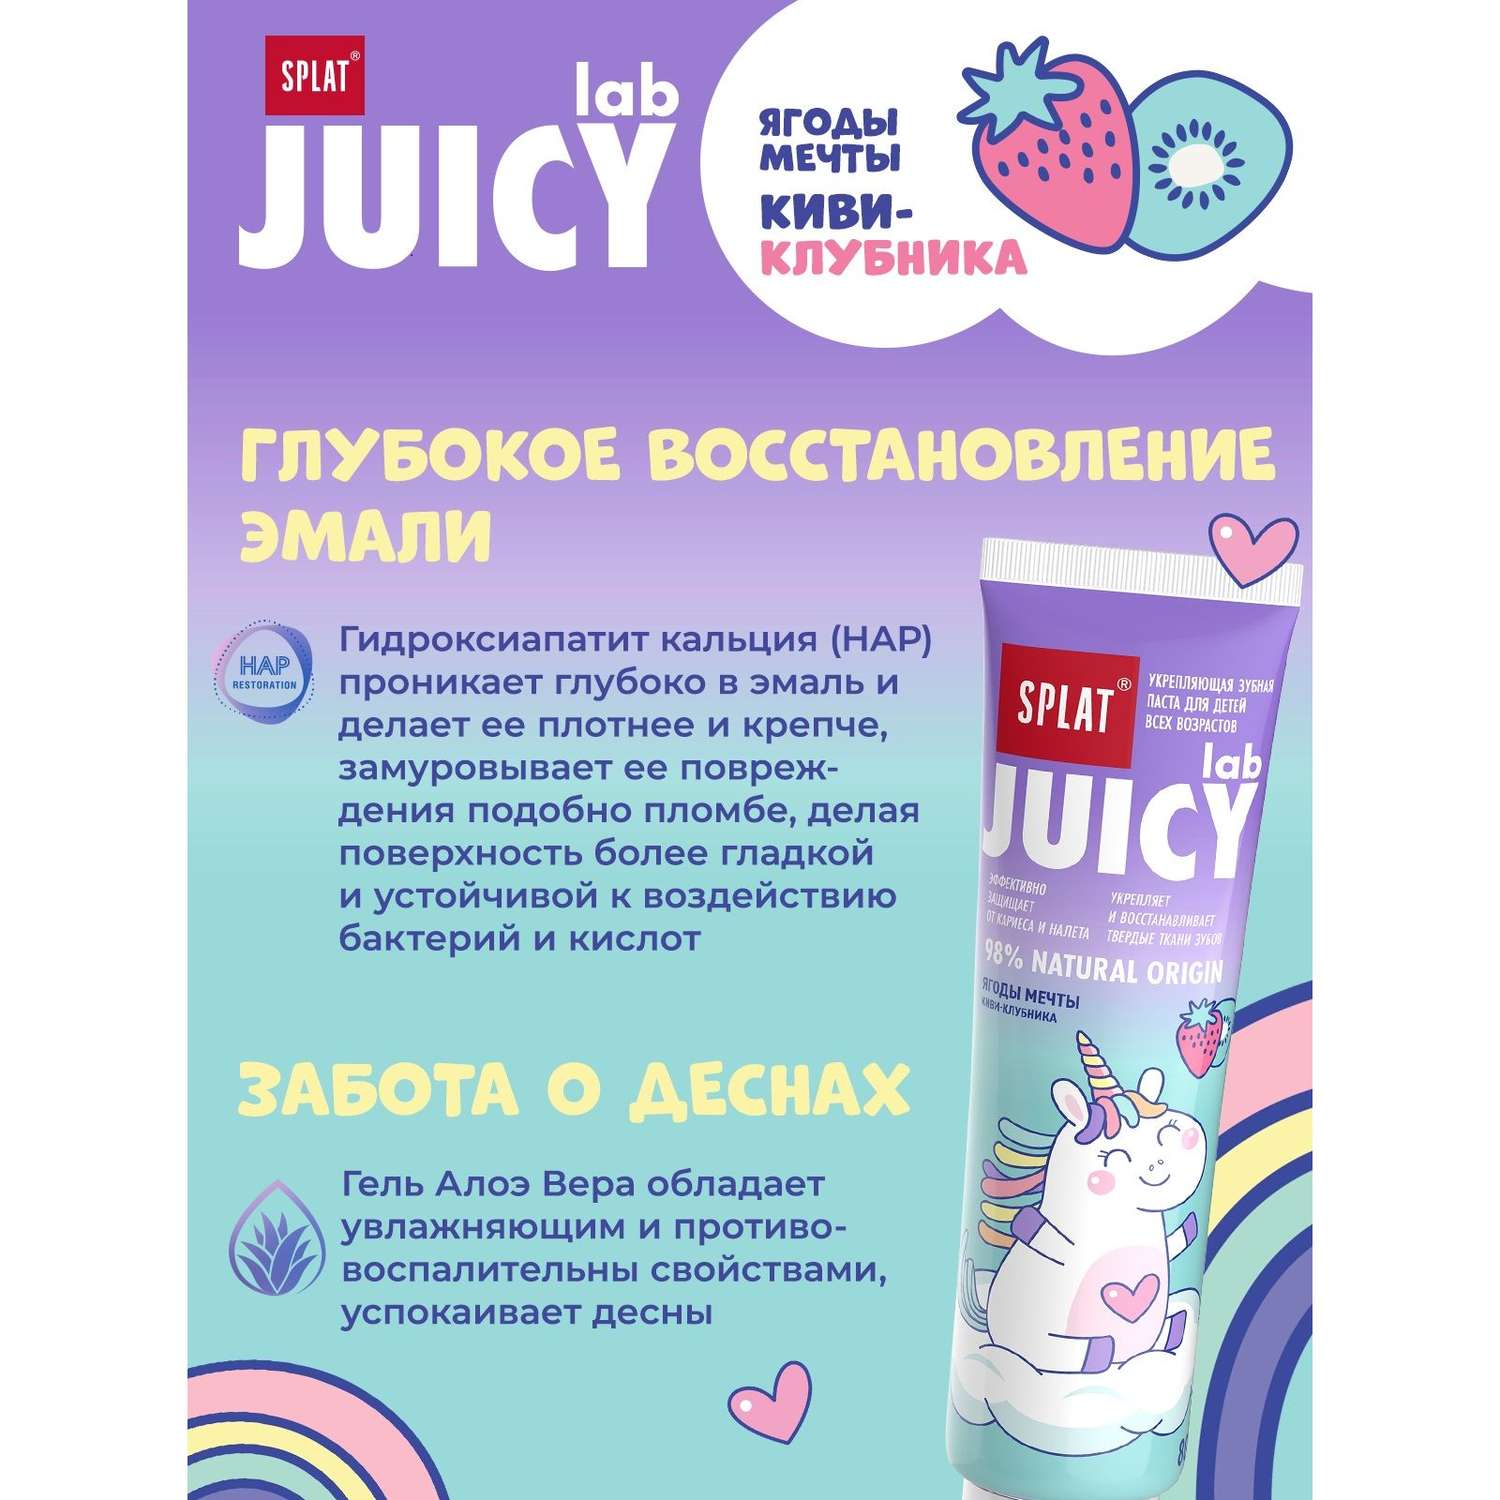 Зубная паста Splat Juicy Lab Ягоды мечты 80г - фото 3